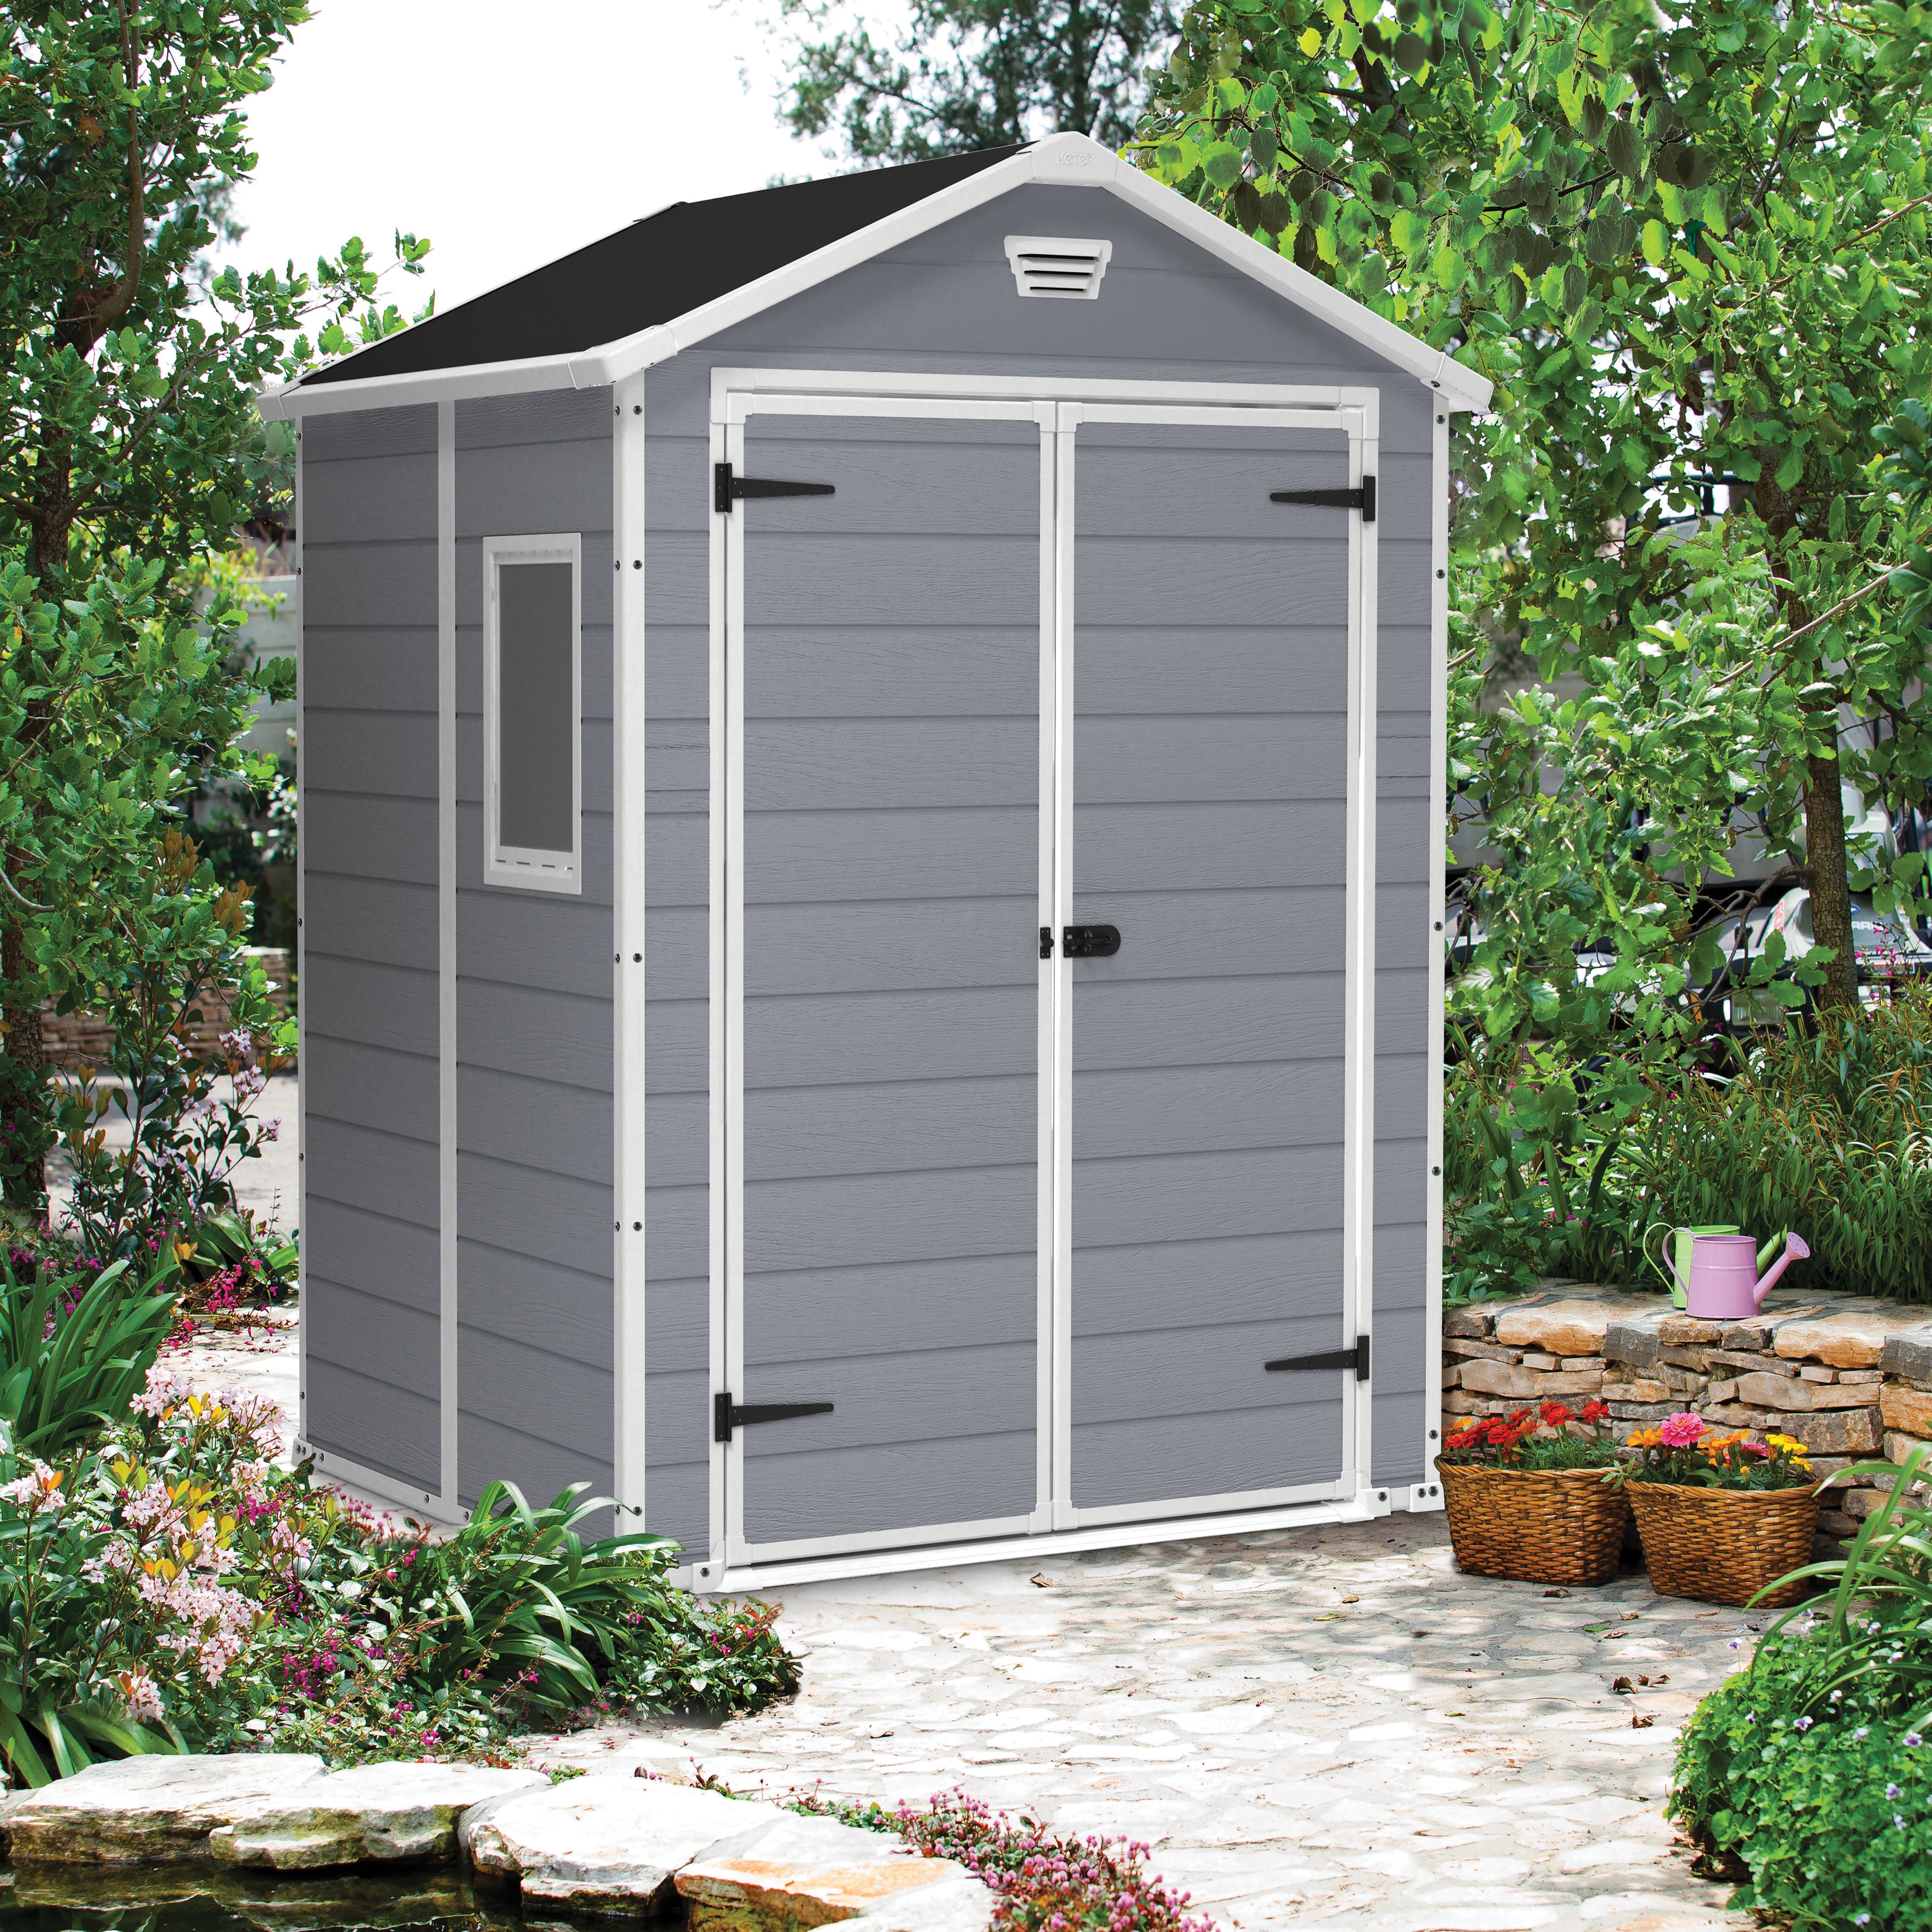 Image of Keter Manor 6 x 5ft Double Door Outdoor Apex Garden Storage Shed - Grey